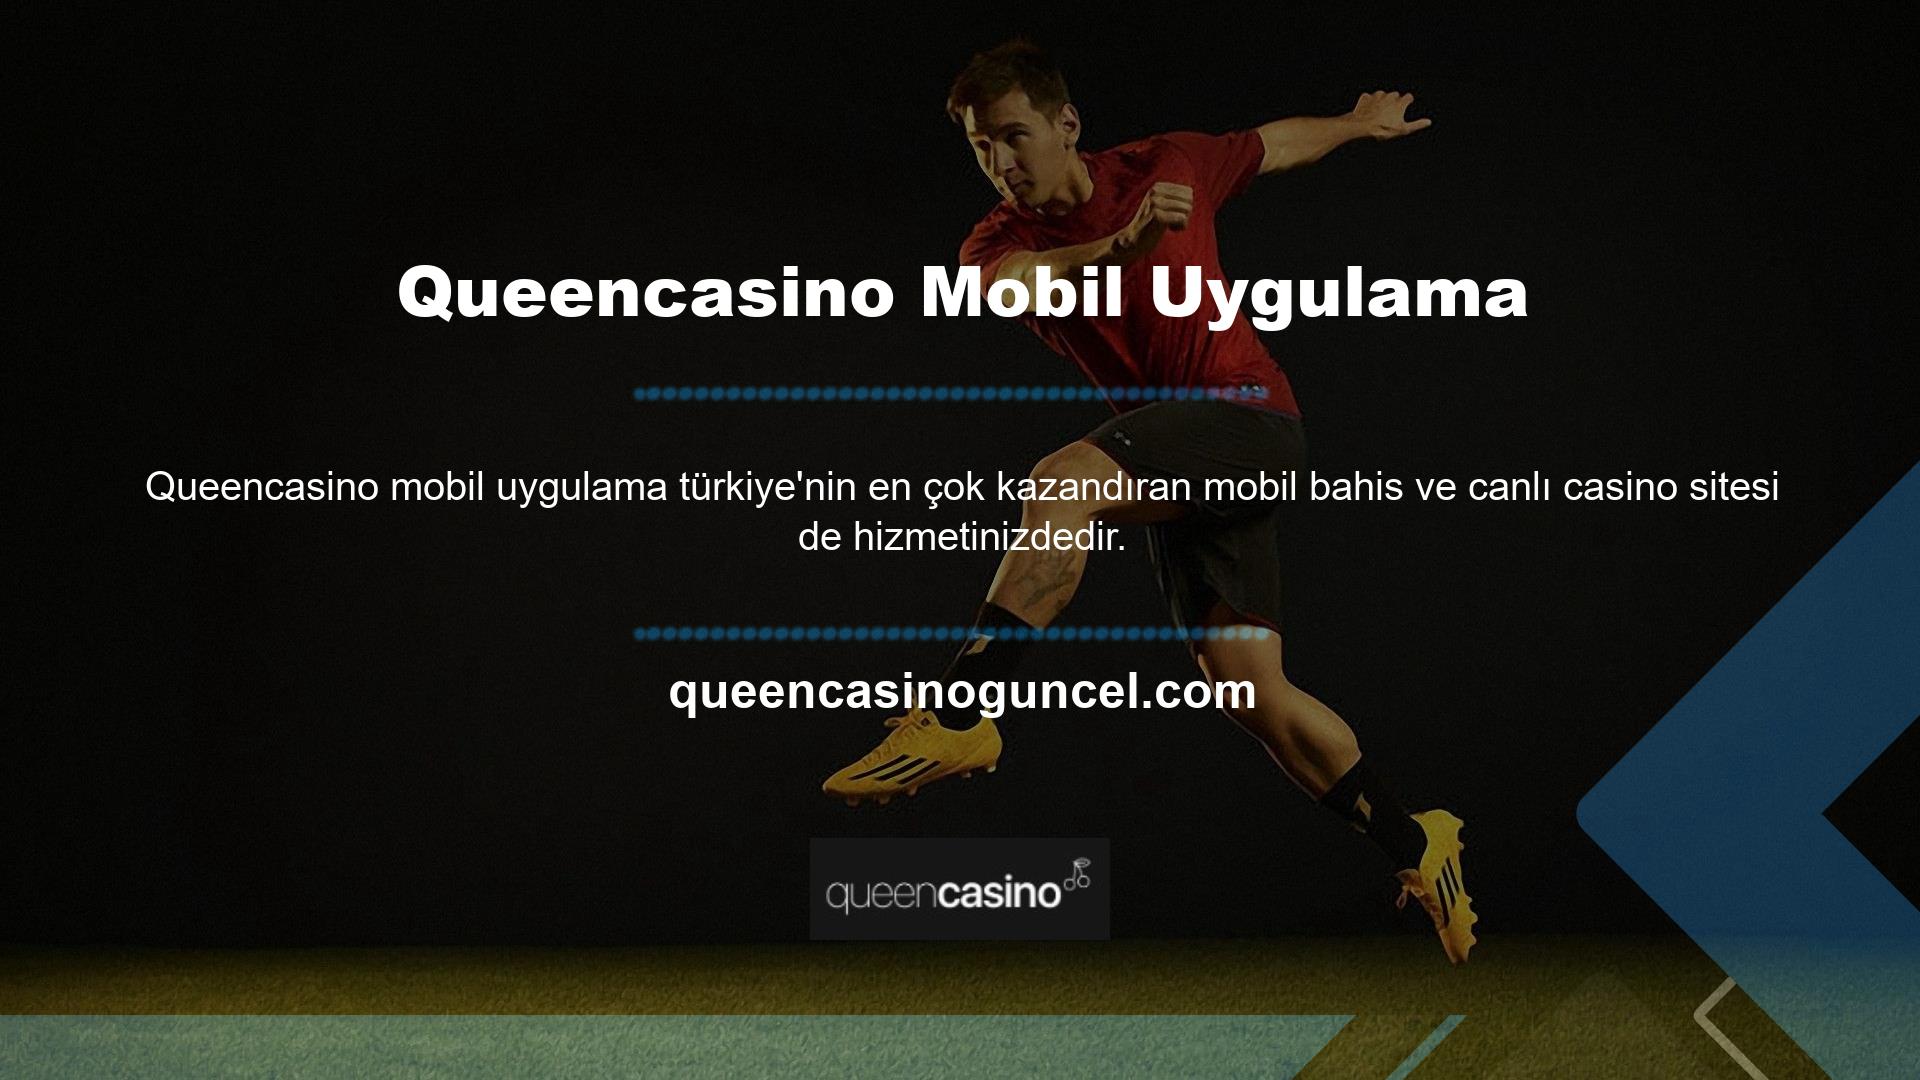 Sürekli yenilik yapan bir şirket olarak Queencasino web sitesi güvenilir, modern mobil uygulamalar sunmaktadır